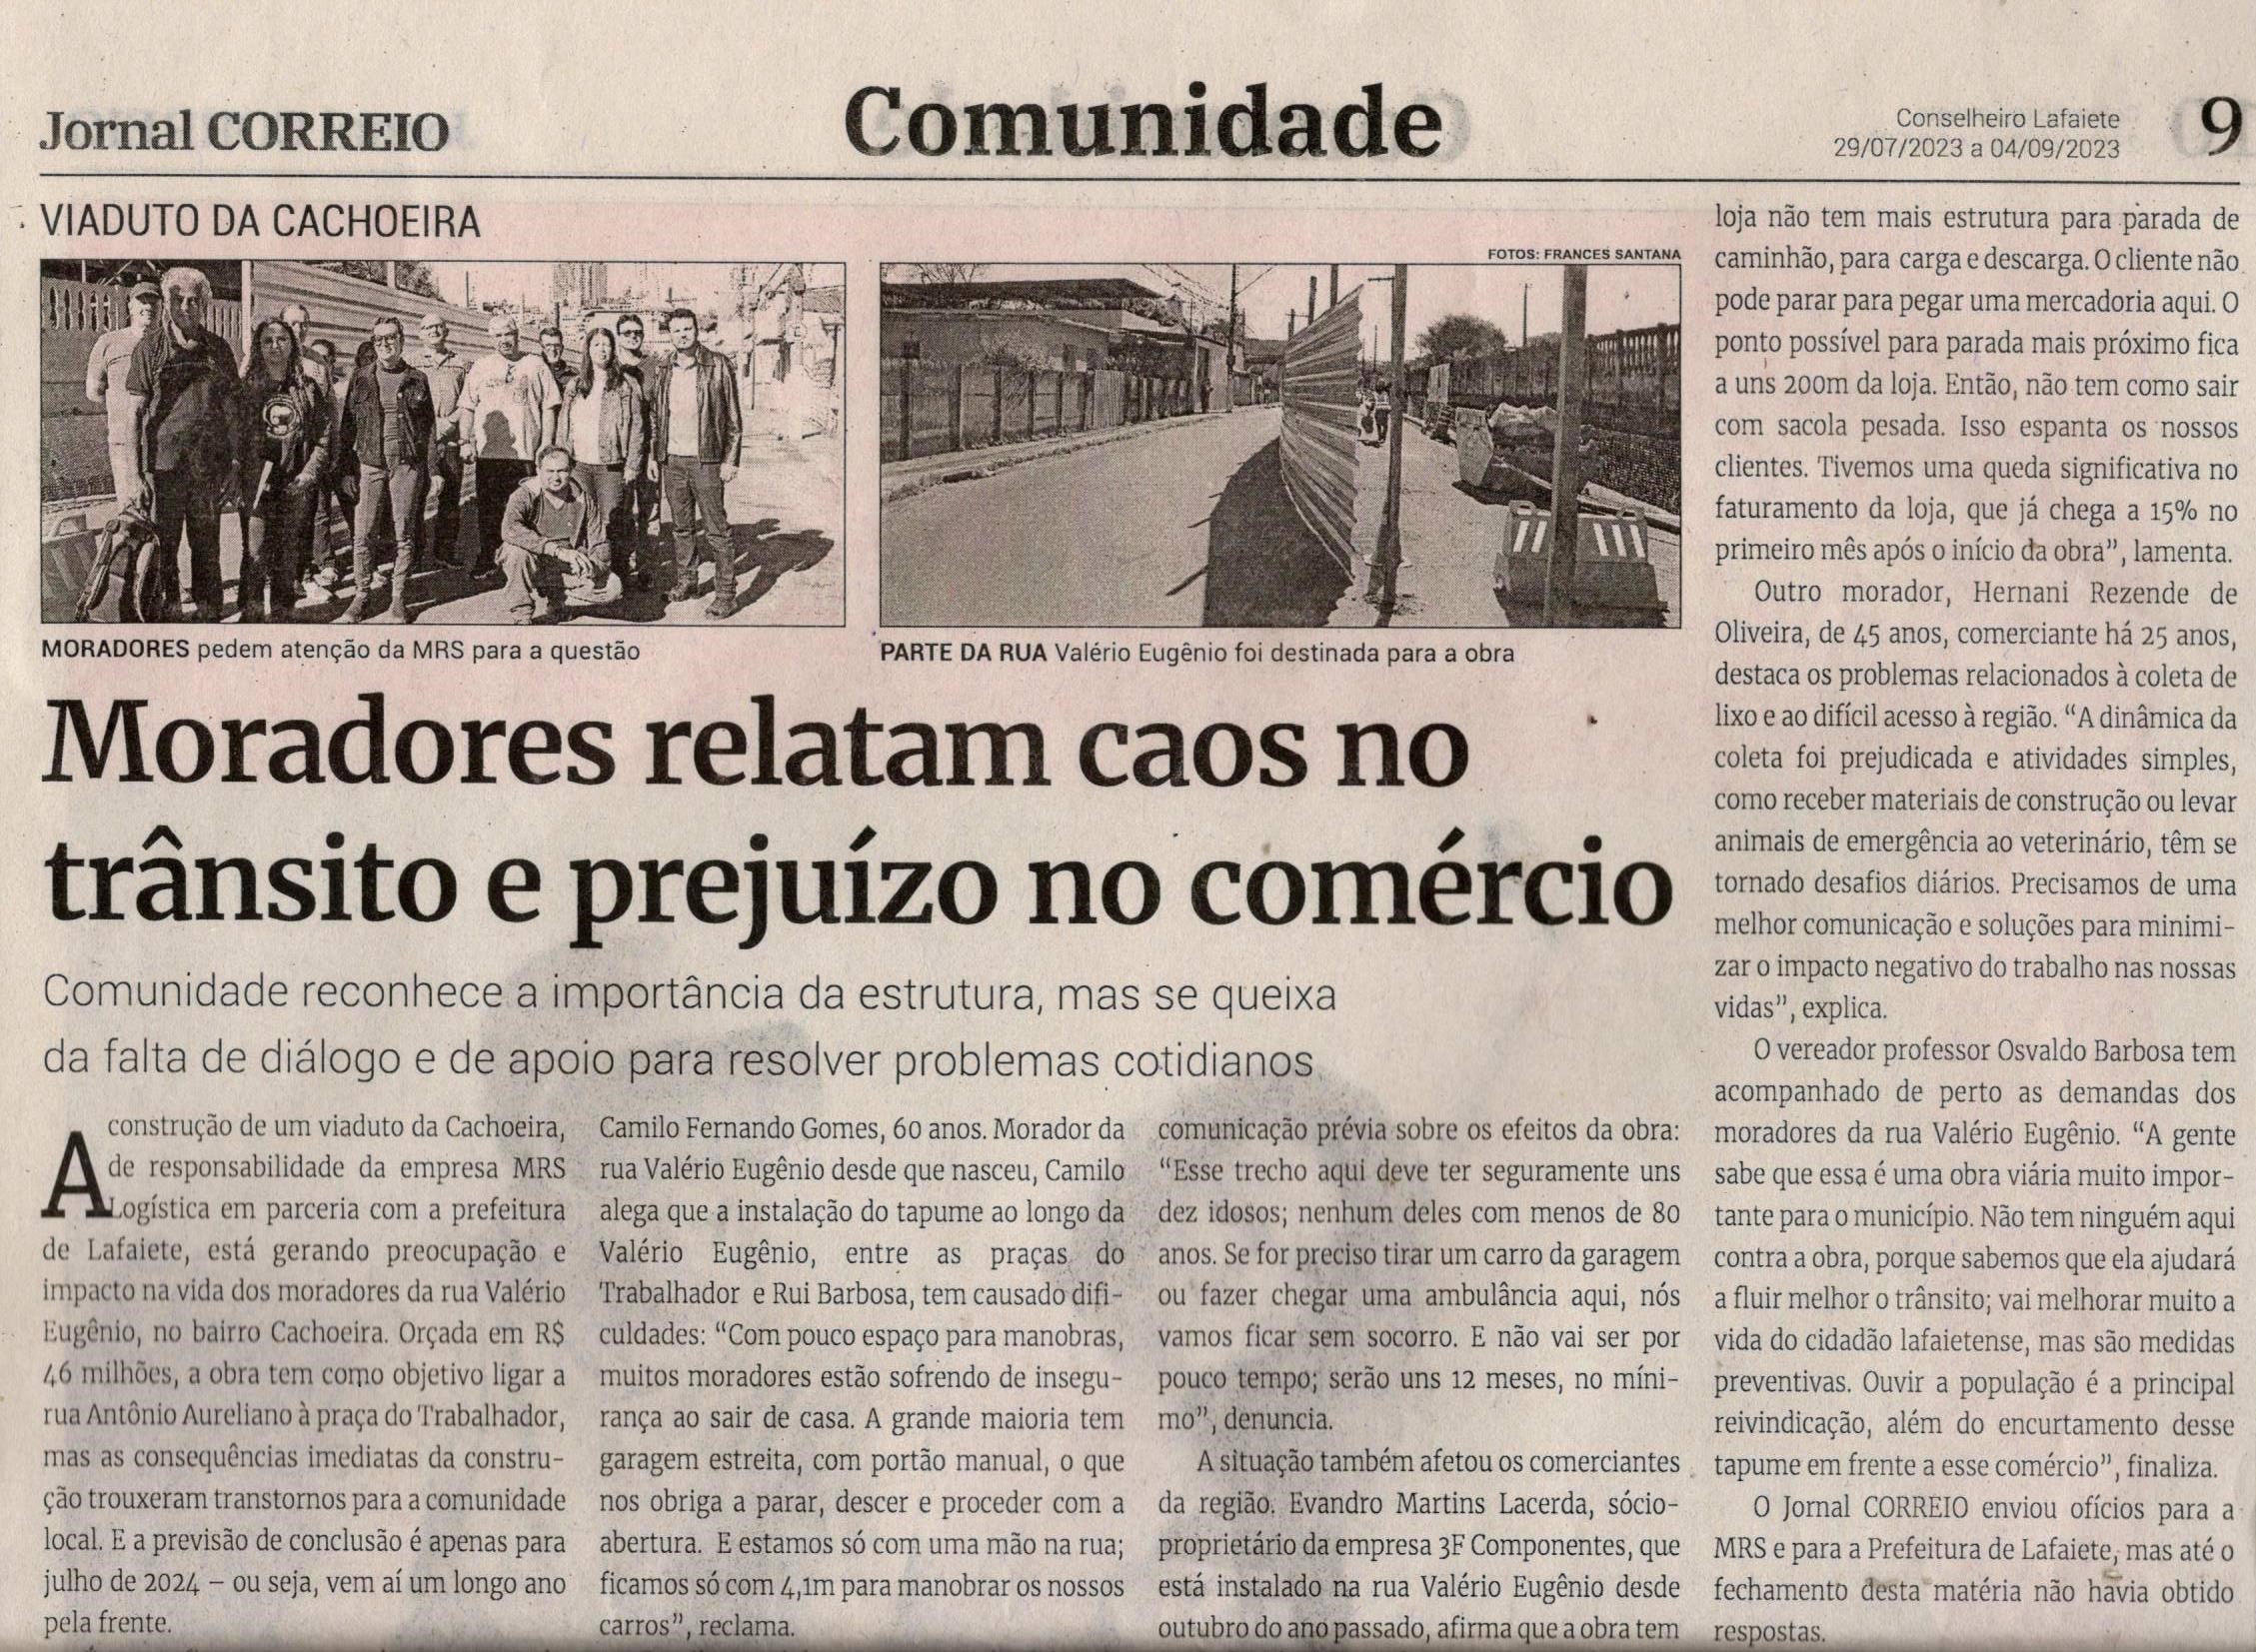 Moradores relatam caos no trânsito e prejuízo no comércio. Jornal Correio da Cidade, Conselheiro Lafaiete de 29 a 04 de ago. de 2023, 1690ª ed., Comunidade, p. 9.